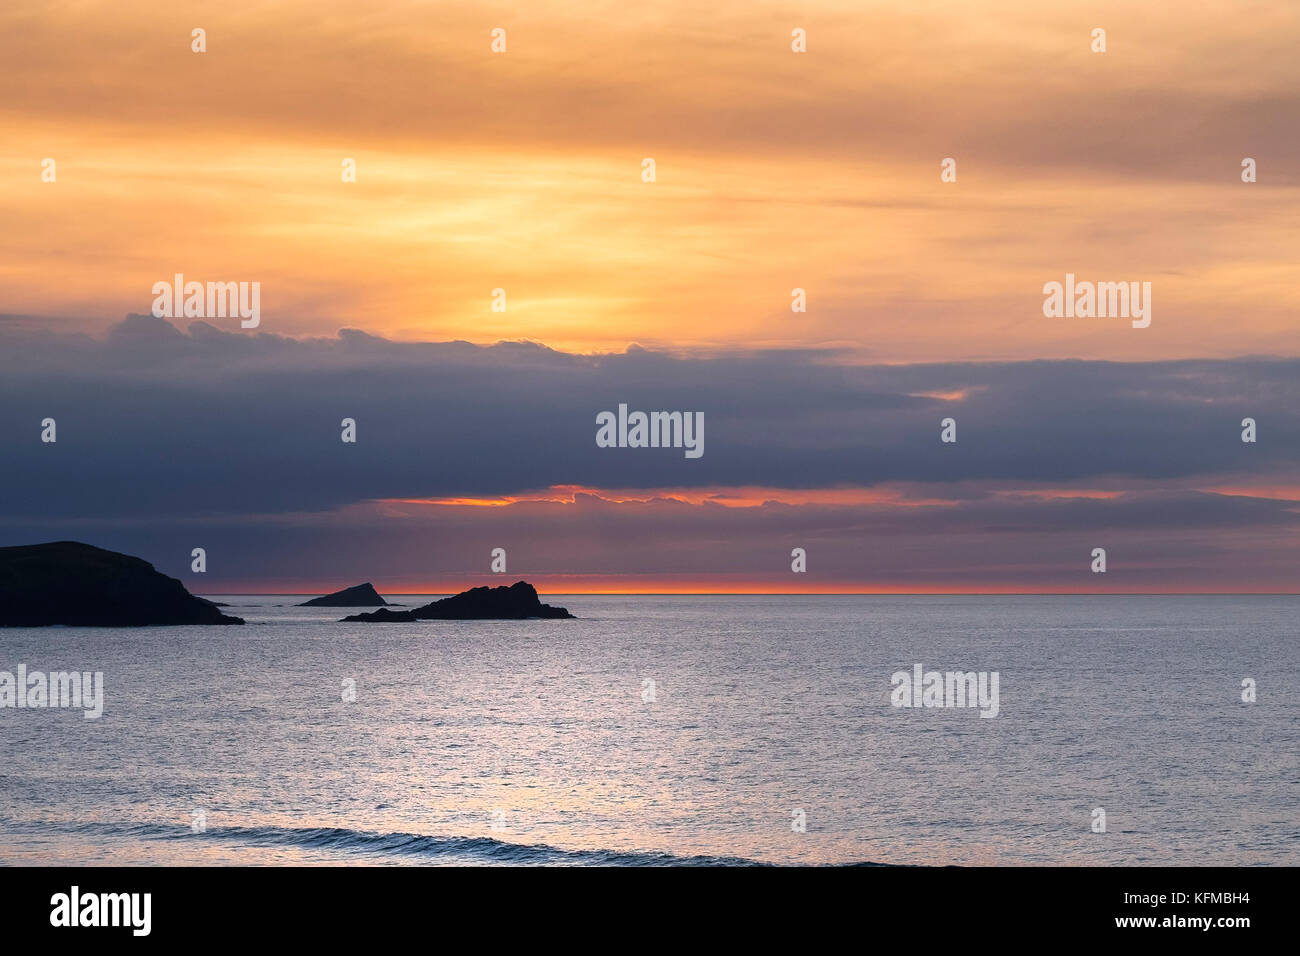 Sonnenuntergang - die Gans und das Küken kleine Inseln aus Osten Pentire Headland sind in silhouette Seeen, wie die Sonne auf den Fistral in Cornwall. Stockfoto